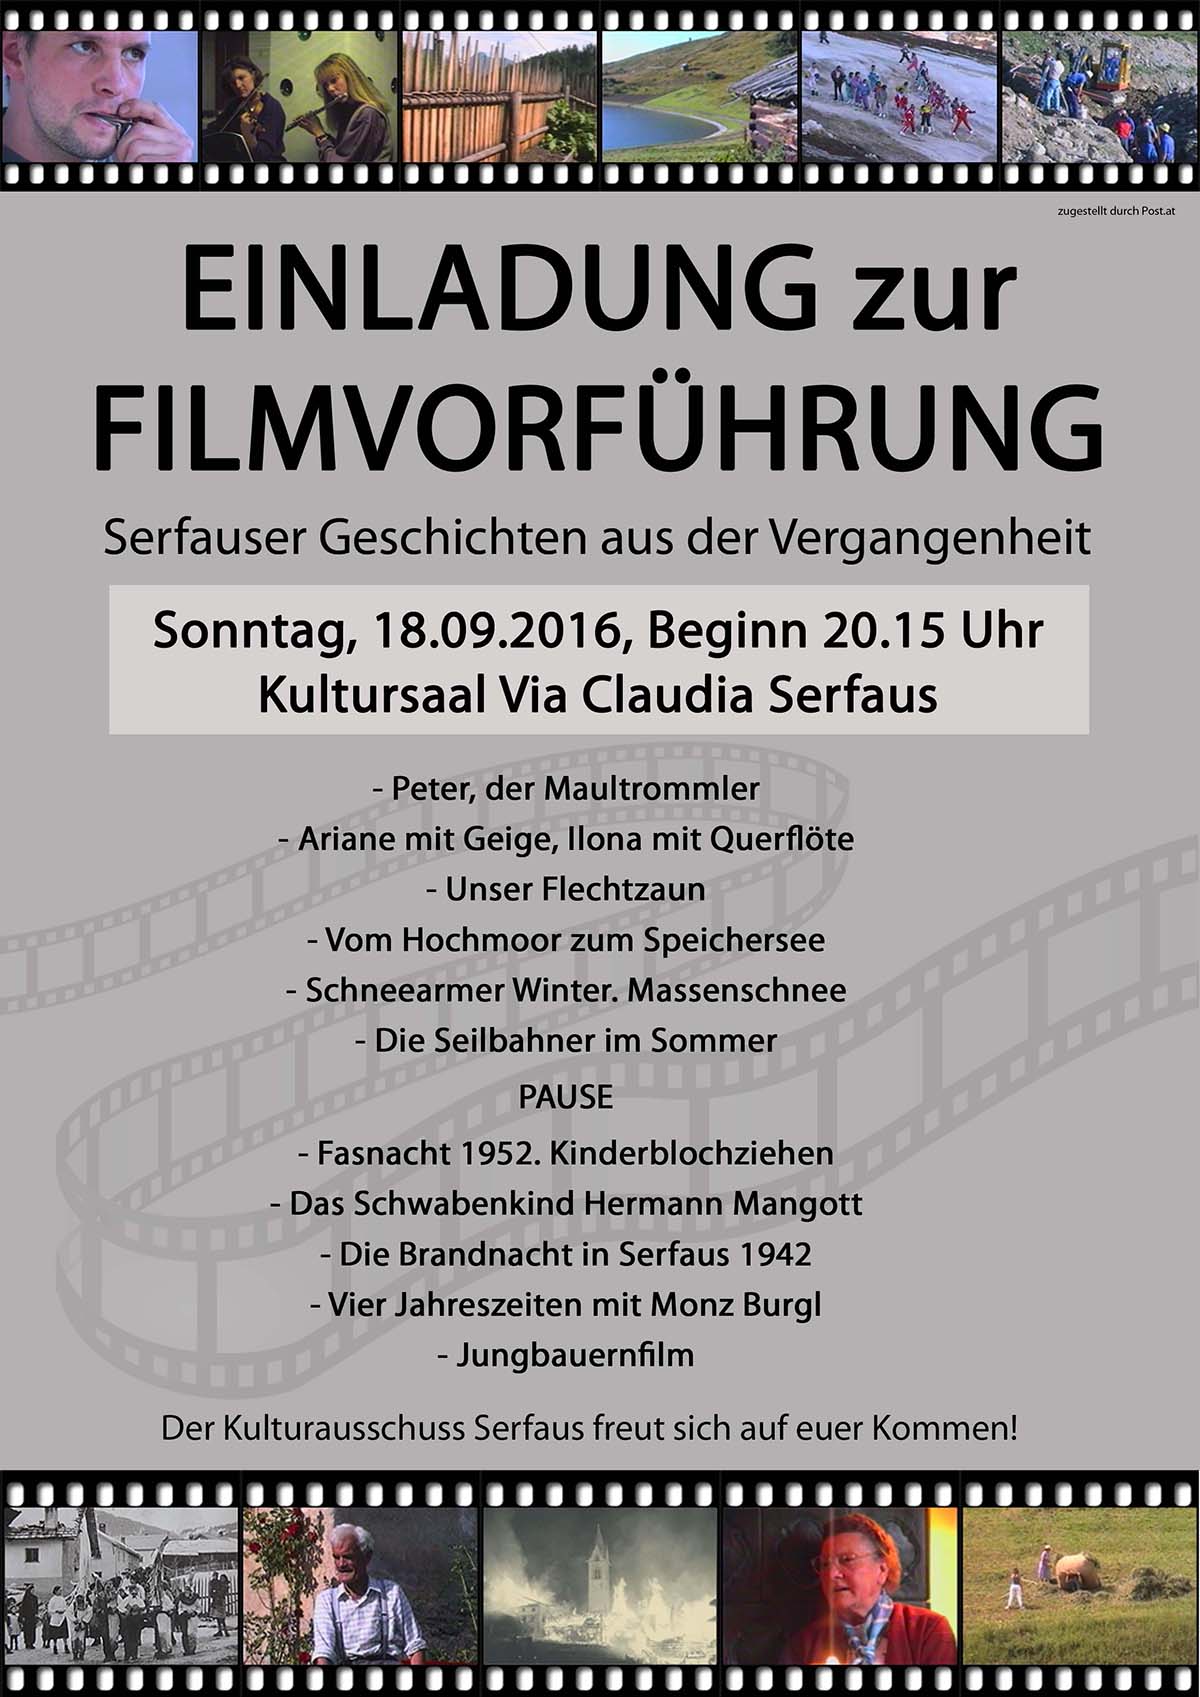 Filmvorführung: "Serfauser Geschichten aus der Vergangenheit" @ Kulturzentrum Serfaus | Serfaus | Tirol | Österreich